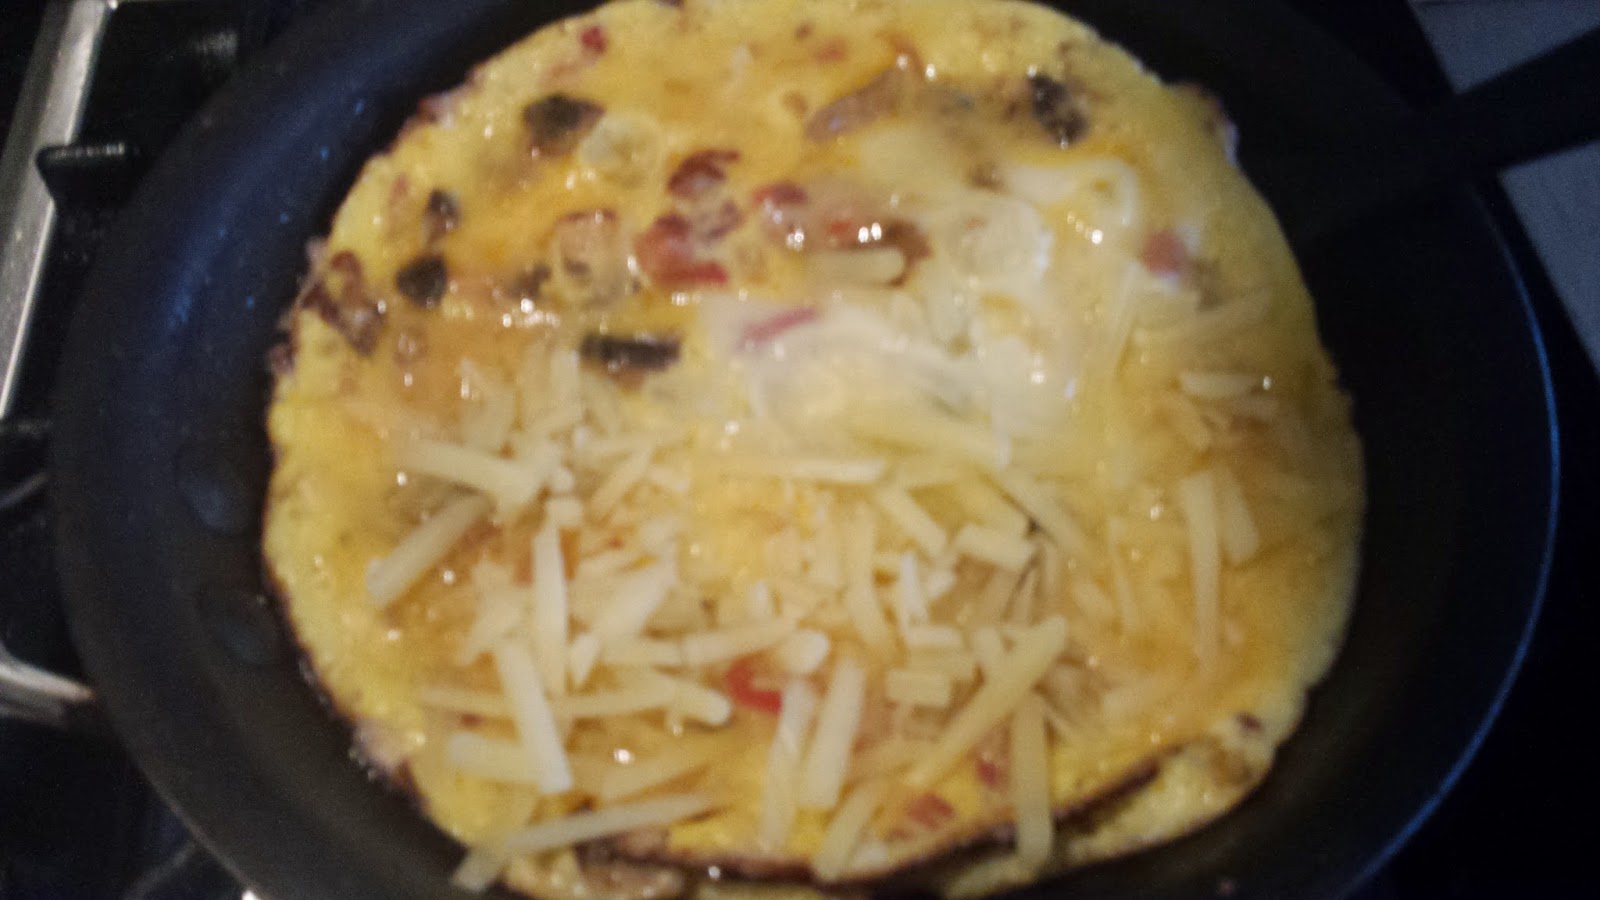 Merryn's Menu: Fijian Omelette - my unique creation